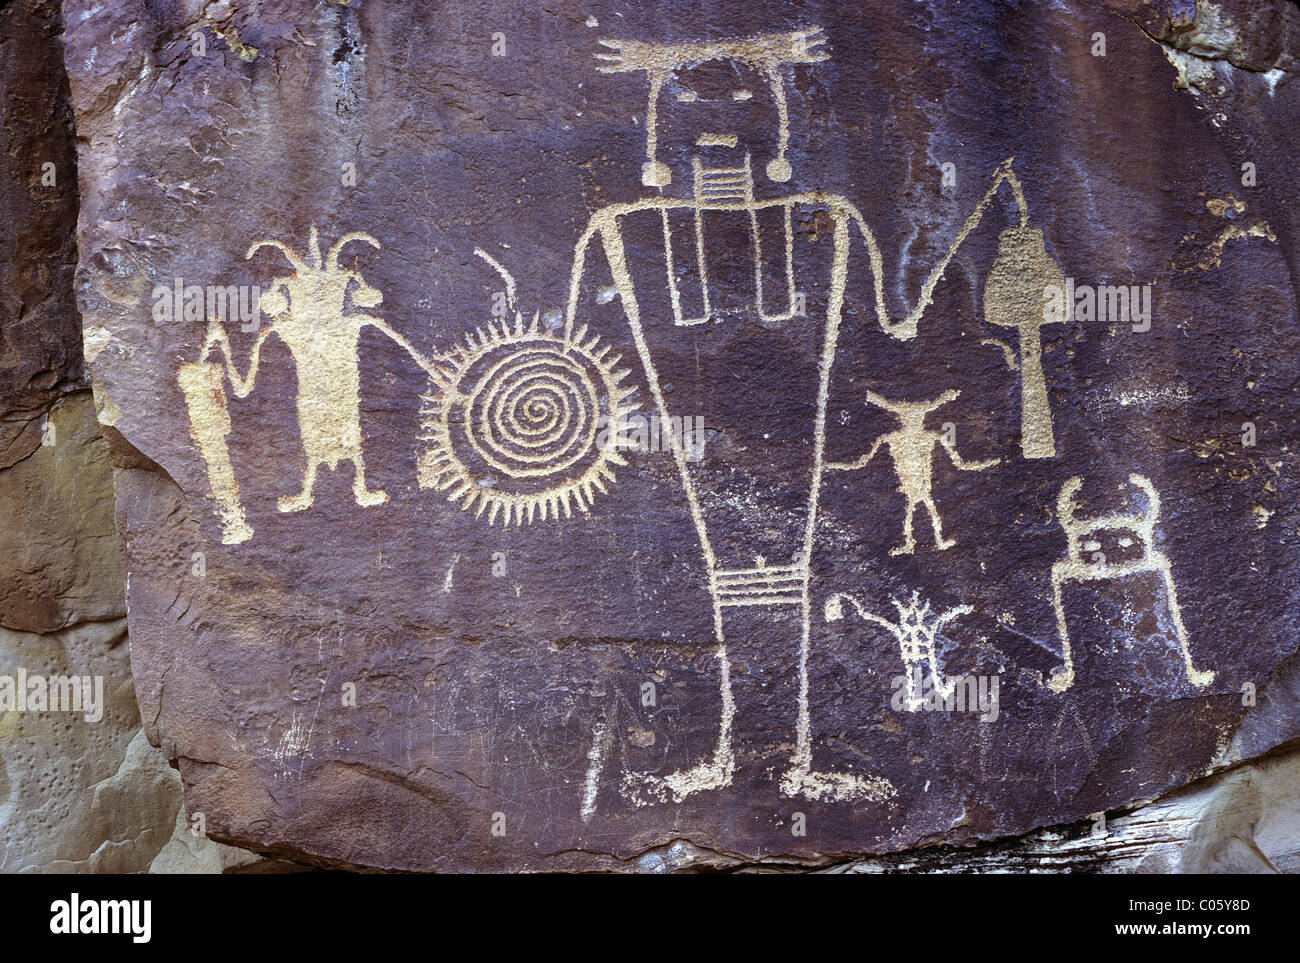 La culture Fremont petroglyph sur falaise de grès avec vernis du désert, McKee Springs de bord, Dinosaur National Monument, Utah, USA. Banque D'Images